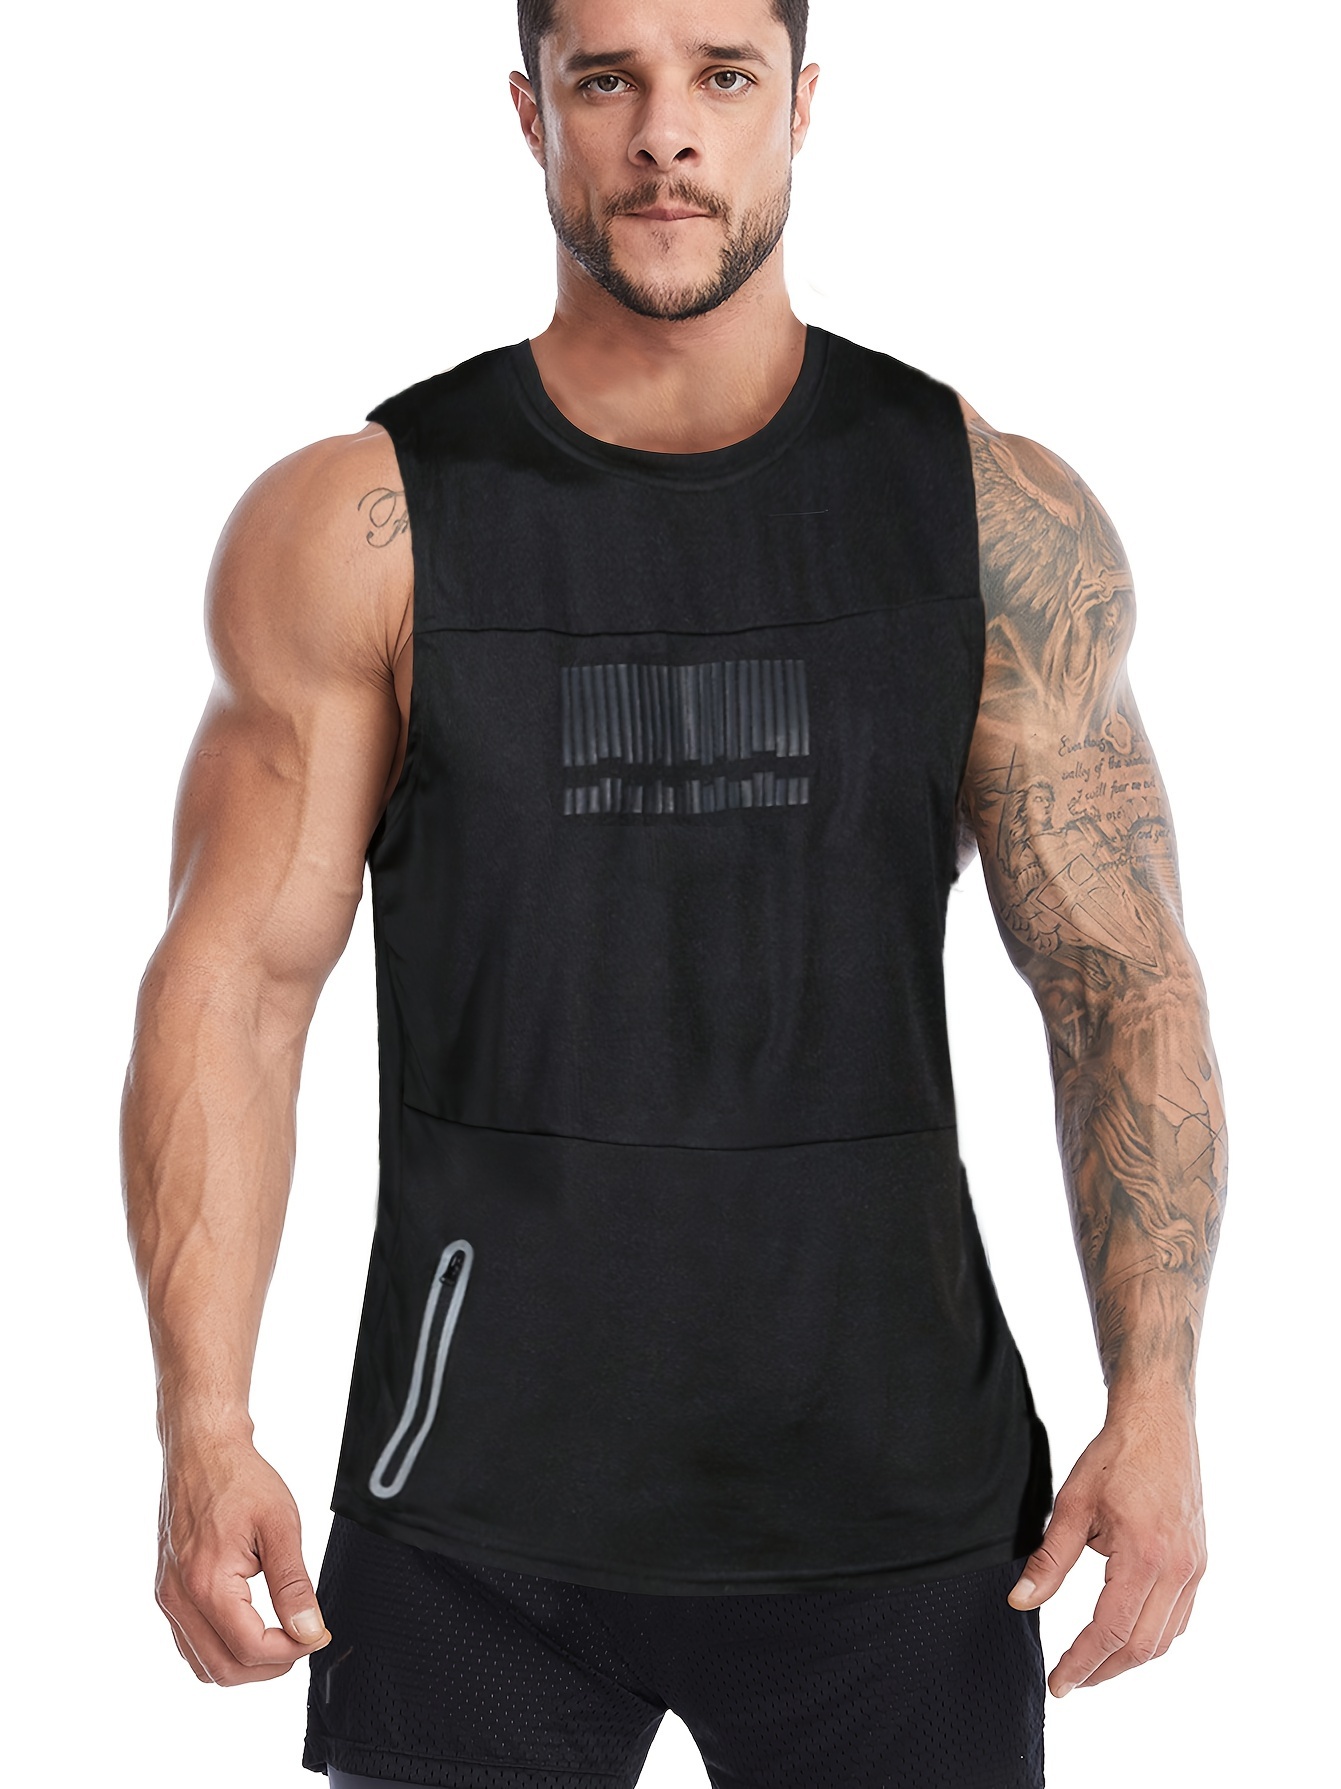 Camisetas deportivas activas para hombre, de secado rápido, para  entrenamiento, gimnasio, manga corta, paquete de 5